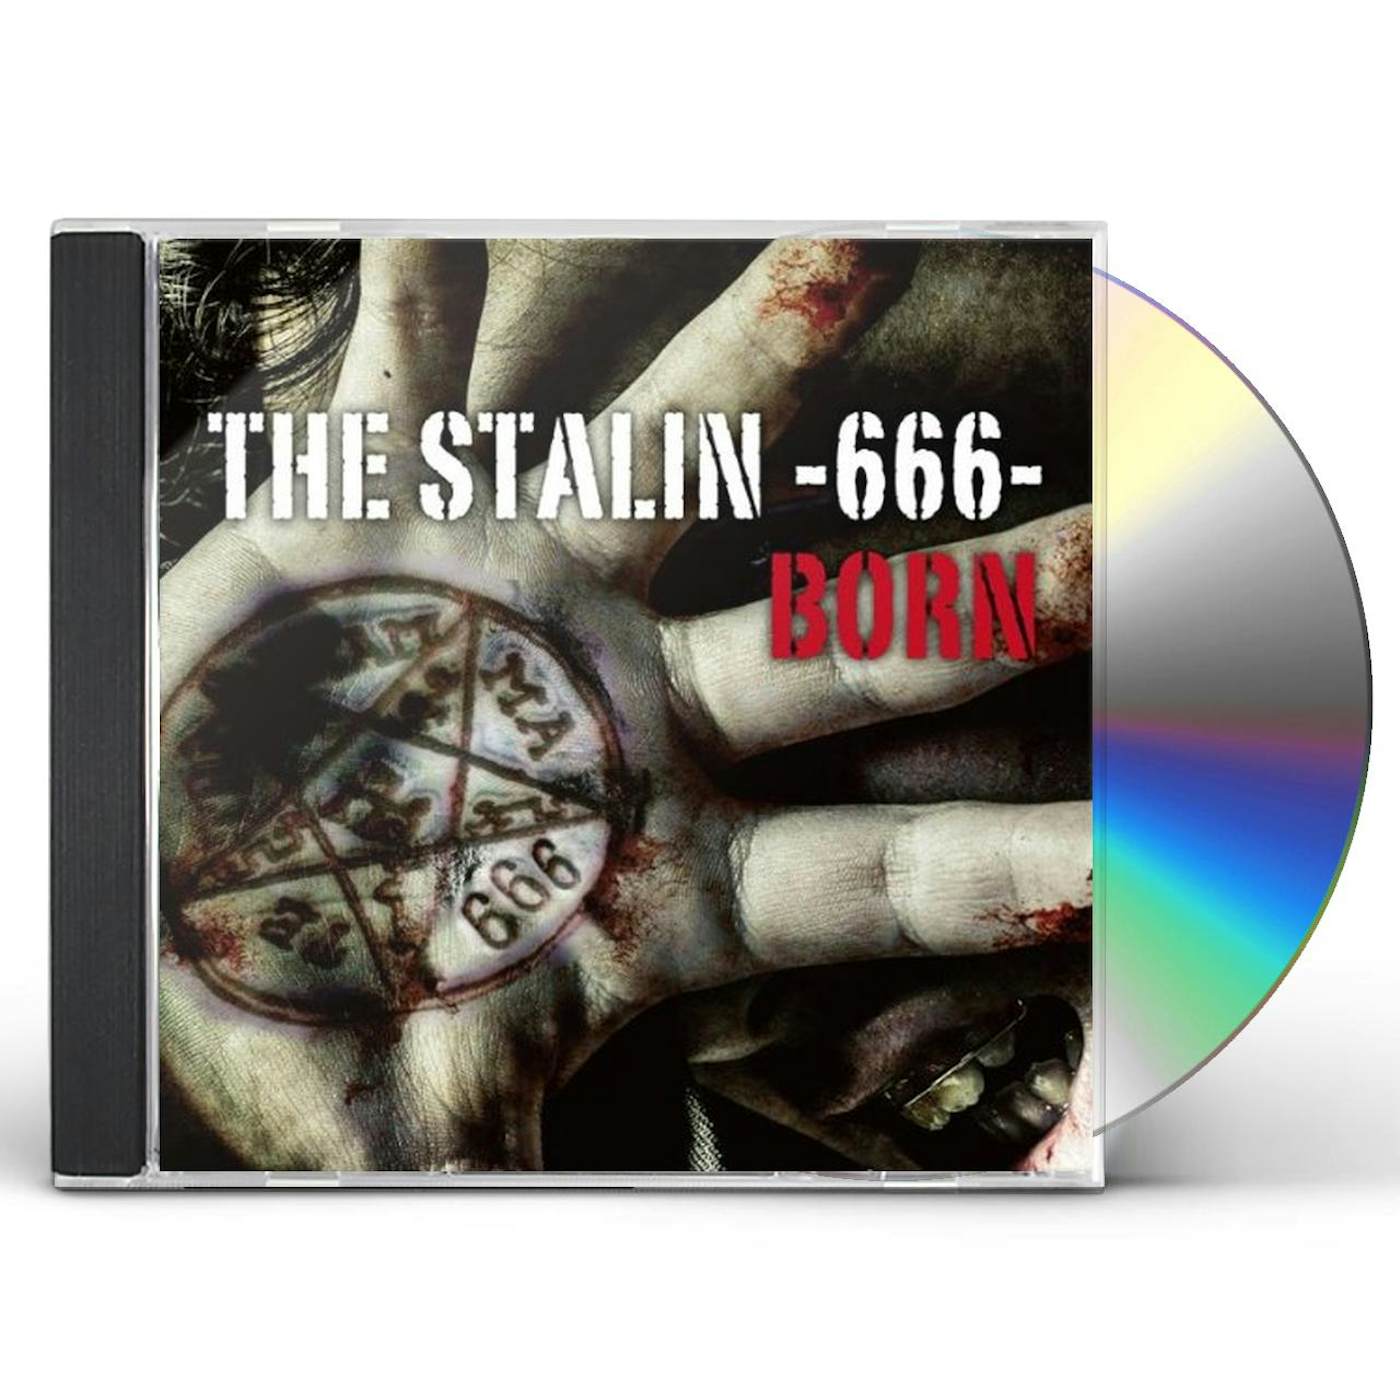 born STALIN-666 CD